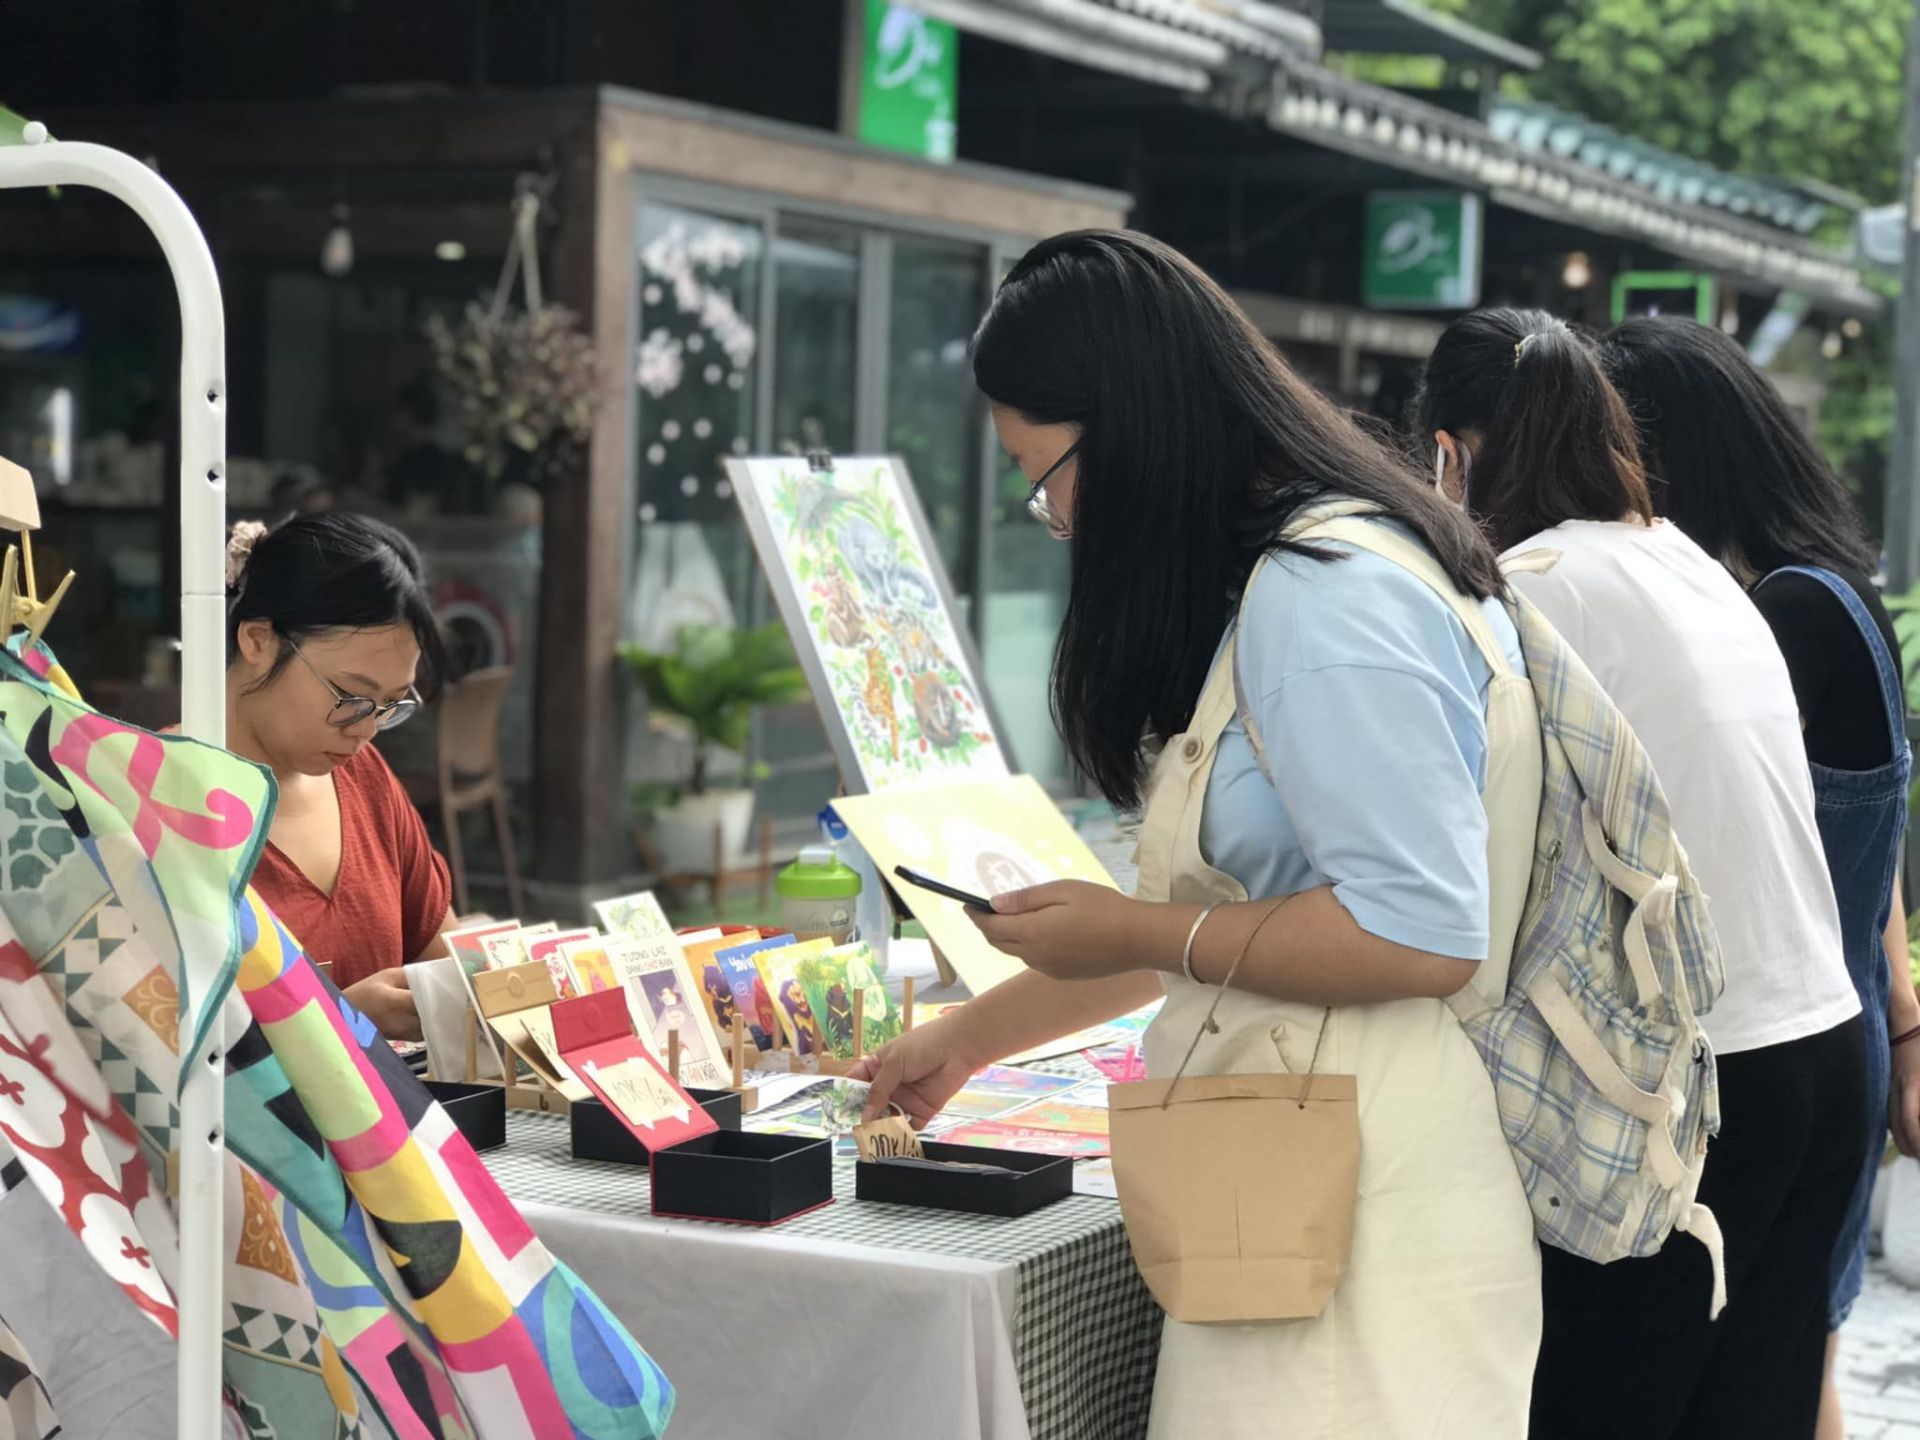 “Phiên chợ Khuyến đọc” diễn ra từ ngày 23 - 25/9 tại Phố sách Hà Nội